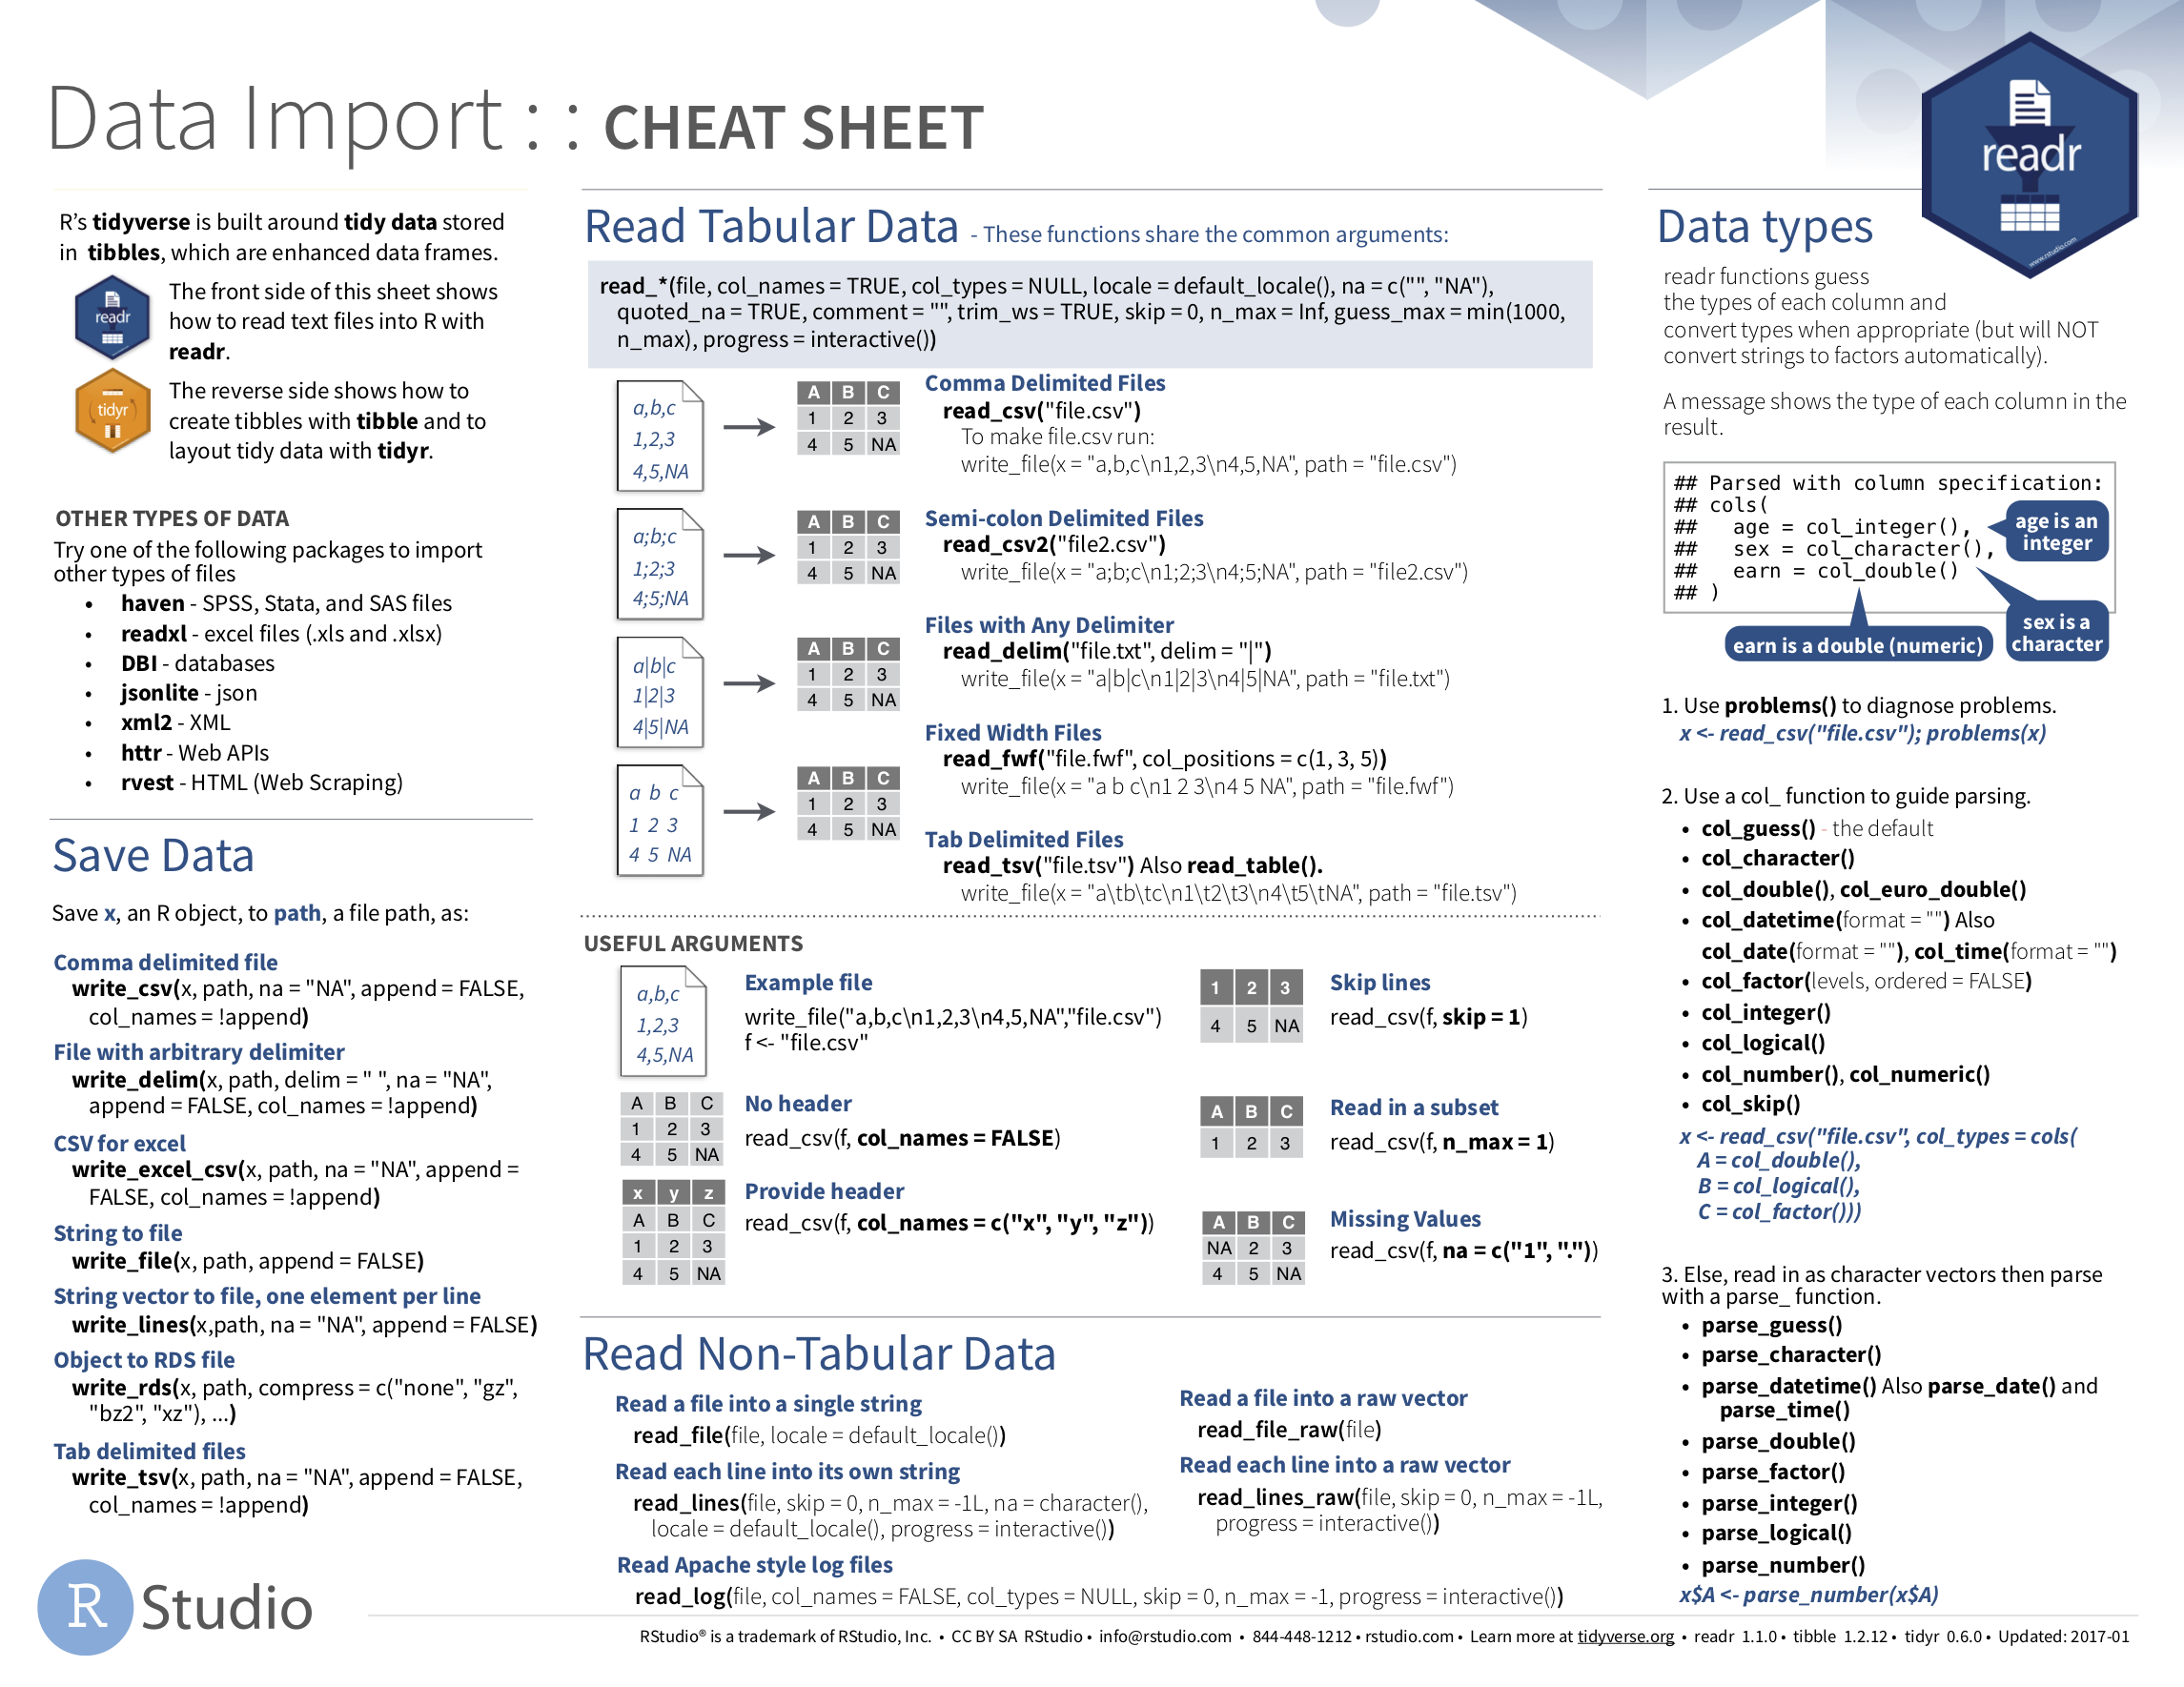 Data Import cheatsheat